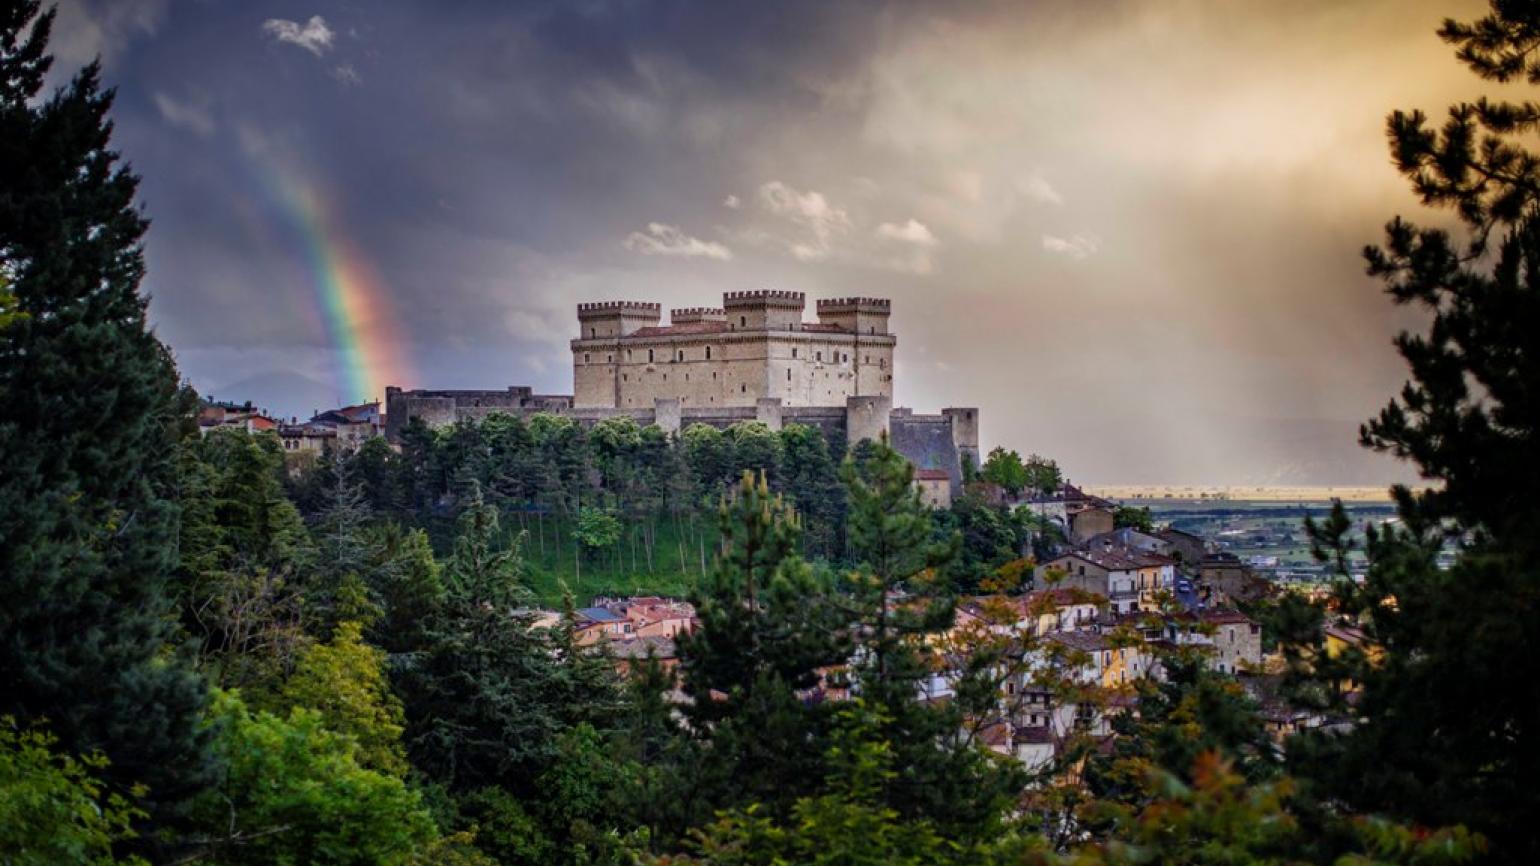 Celano (Aq), il Castello con l’arcobaleno, (foto archivio Regione Abruzzo, autore Nino Marcanio)